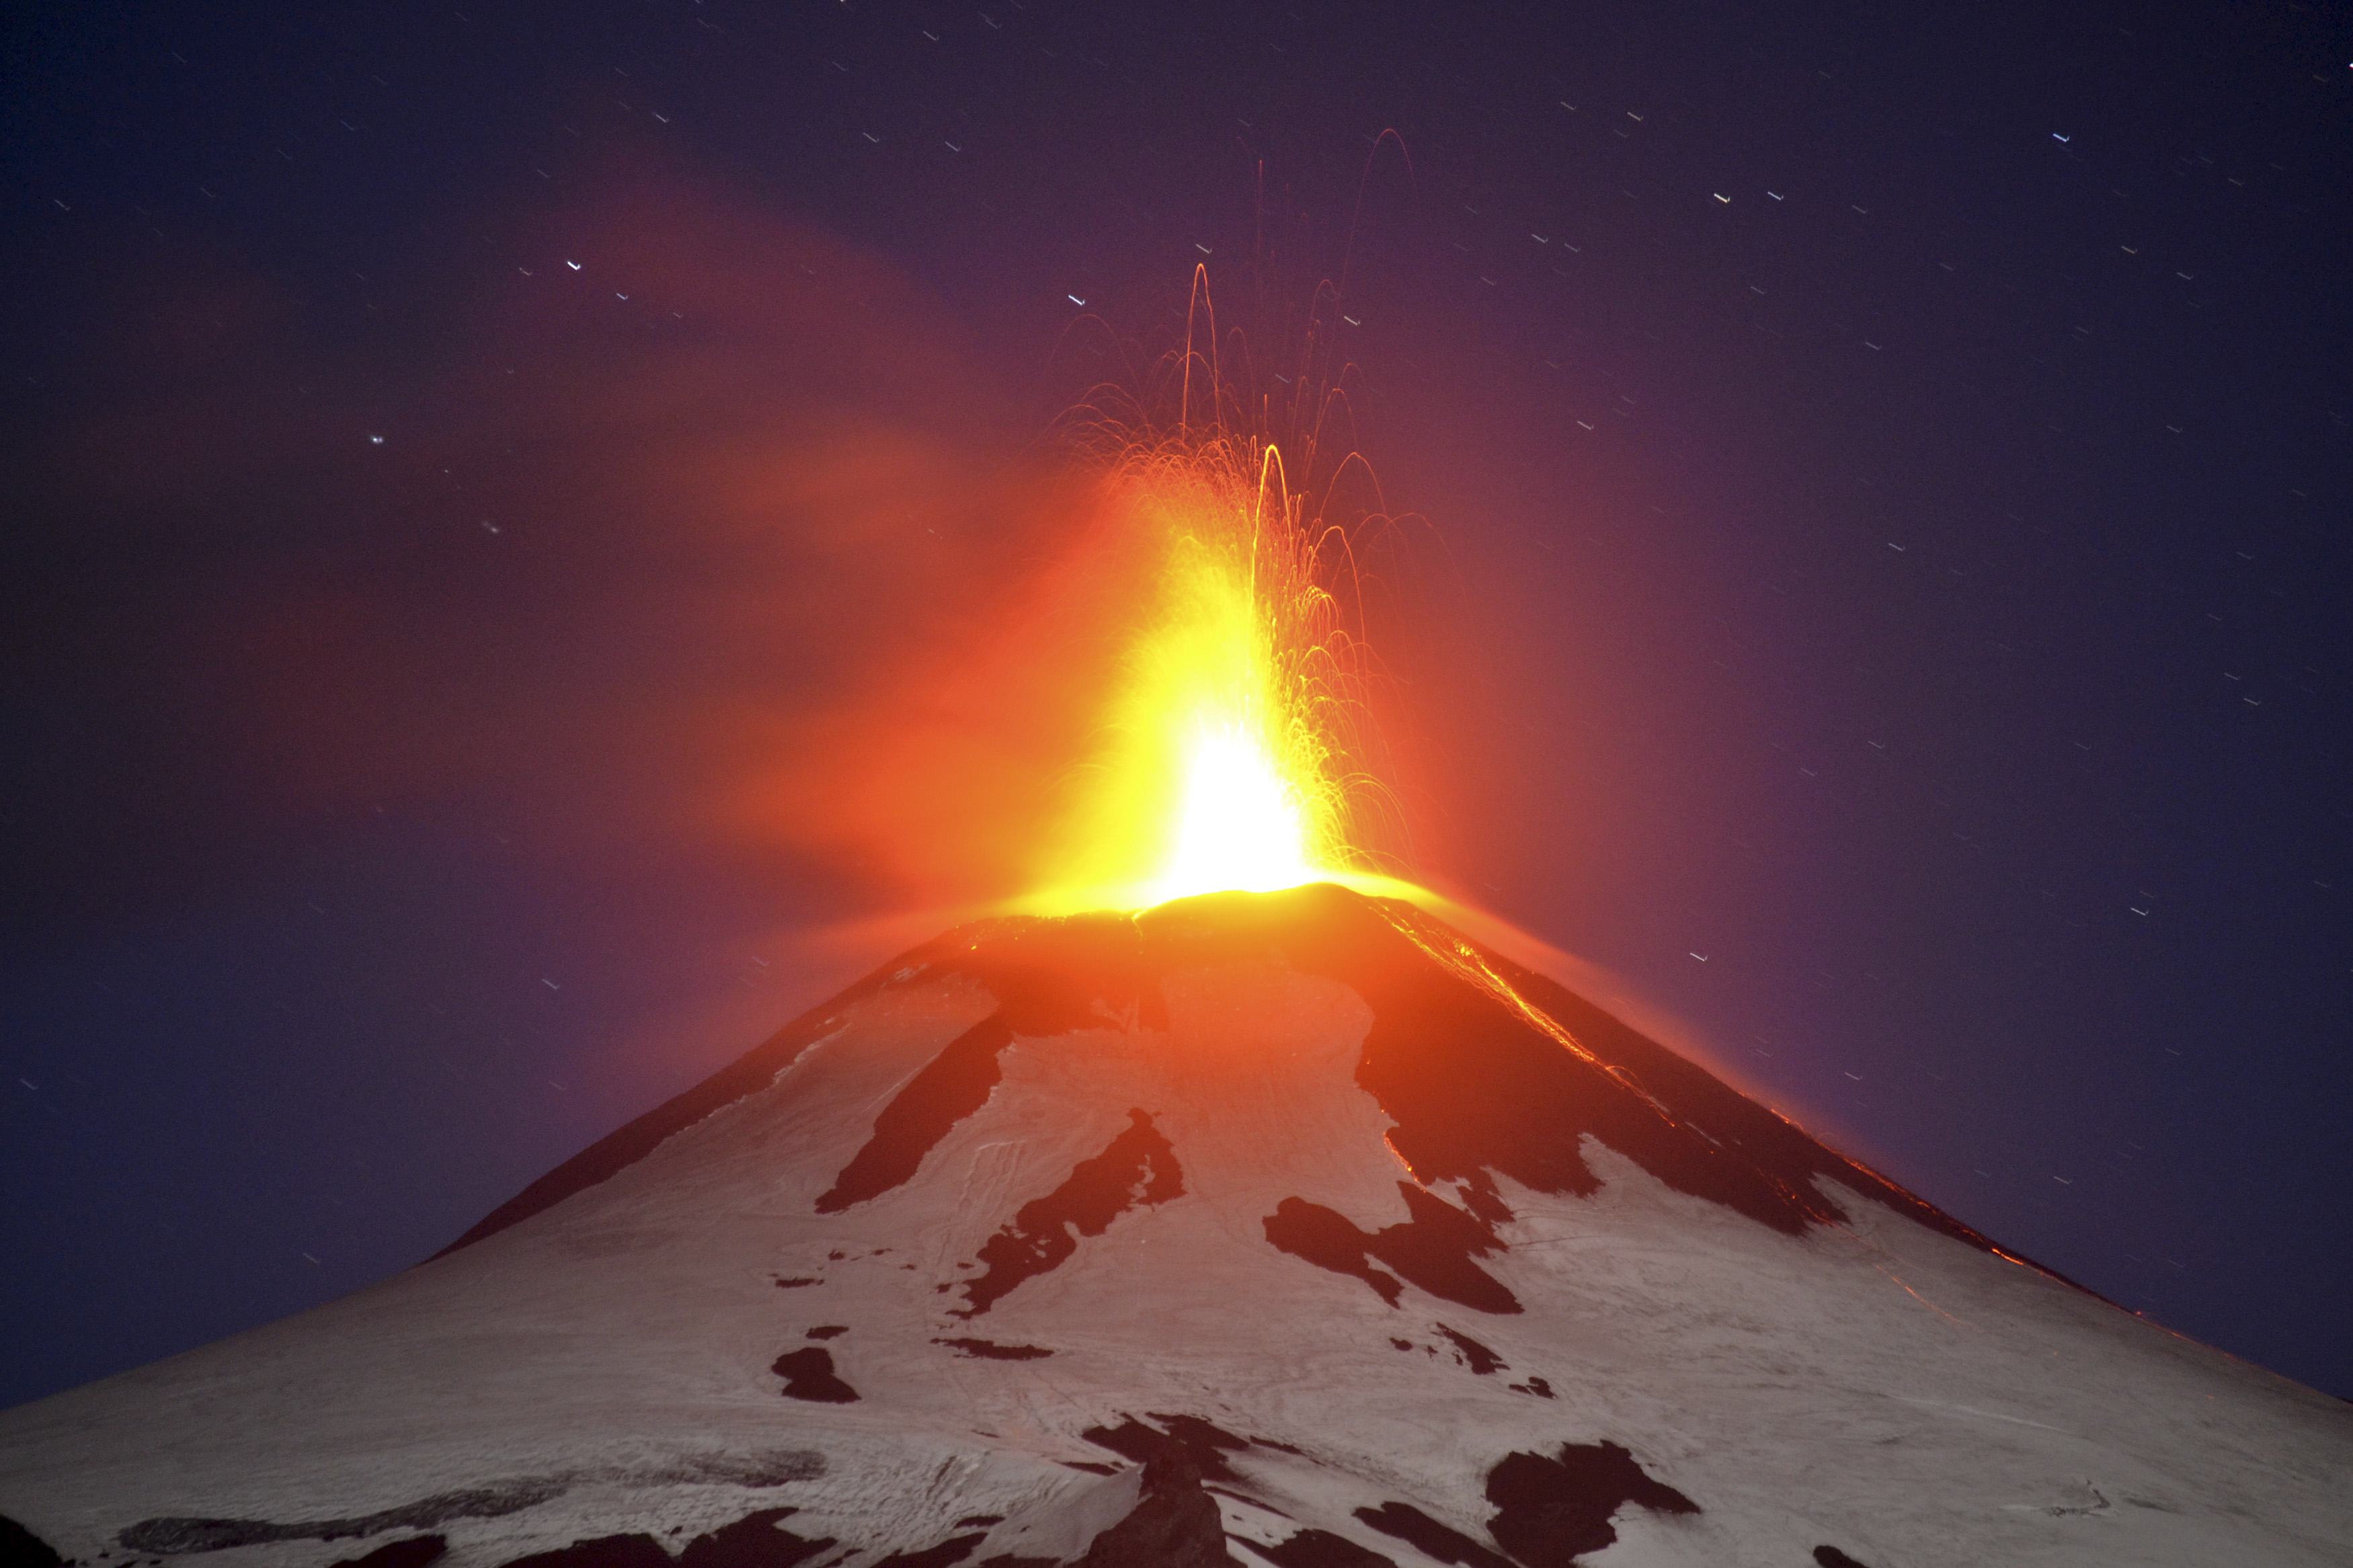 Volcán chileno Villarrica lanza fumarola (Foto)